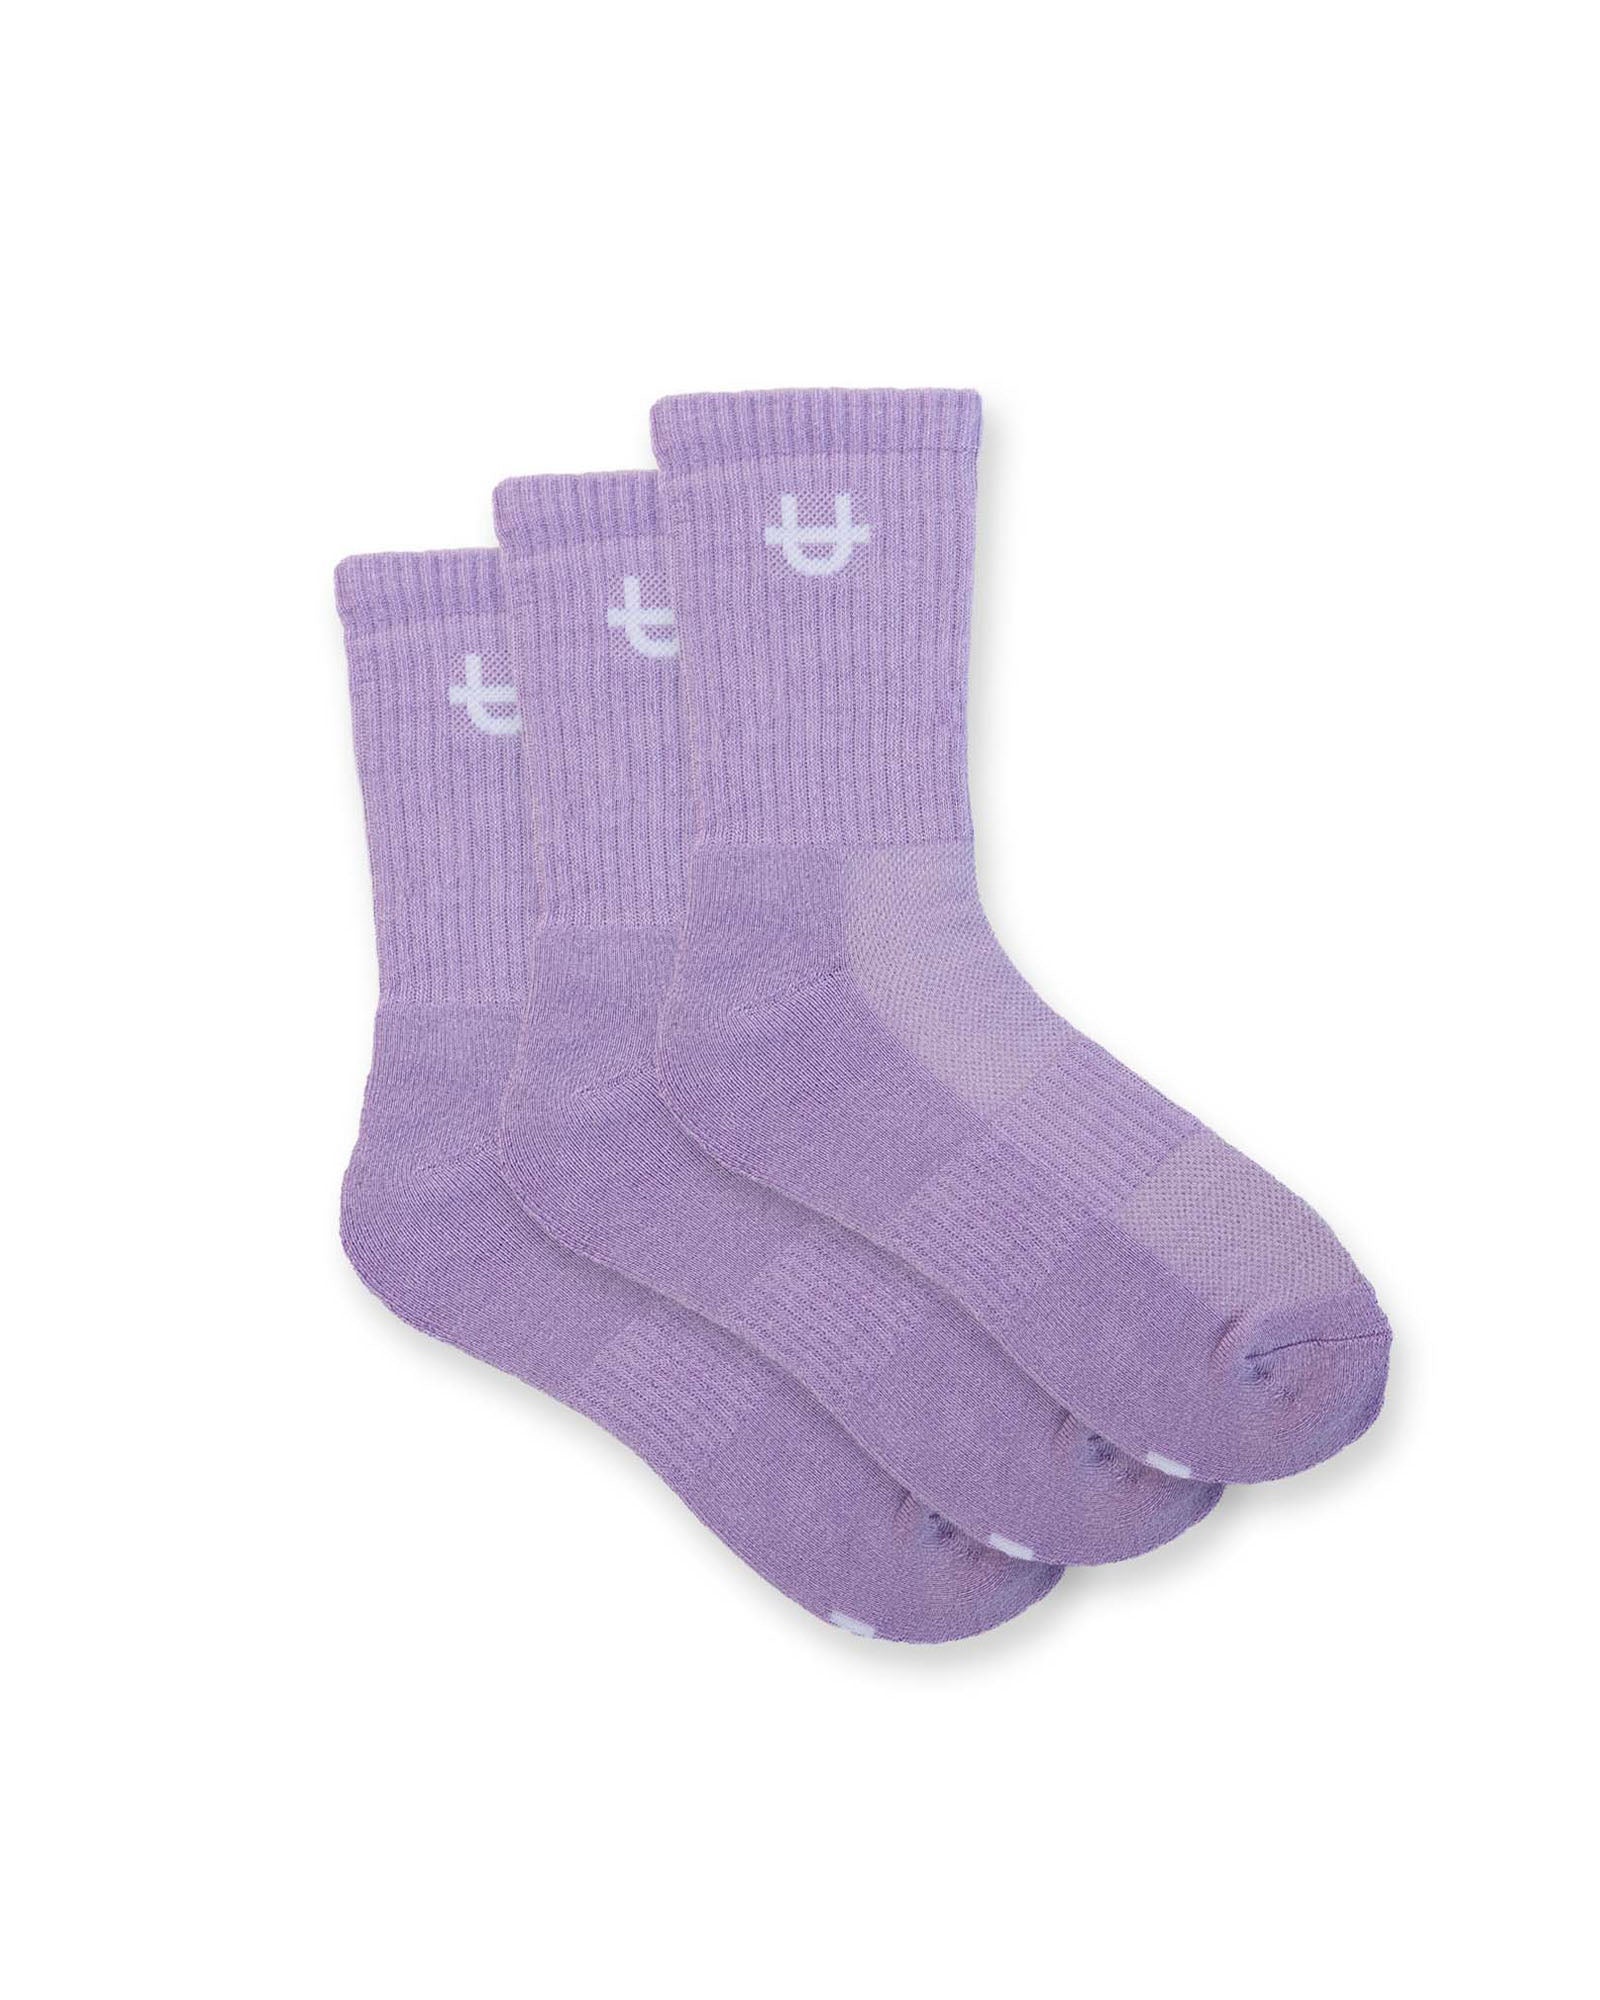 Original Crew Socks Lavender 3-Pack